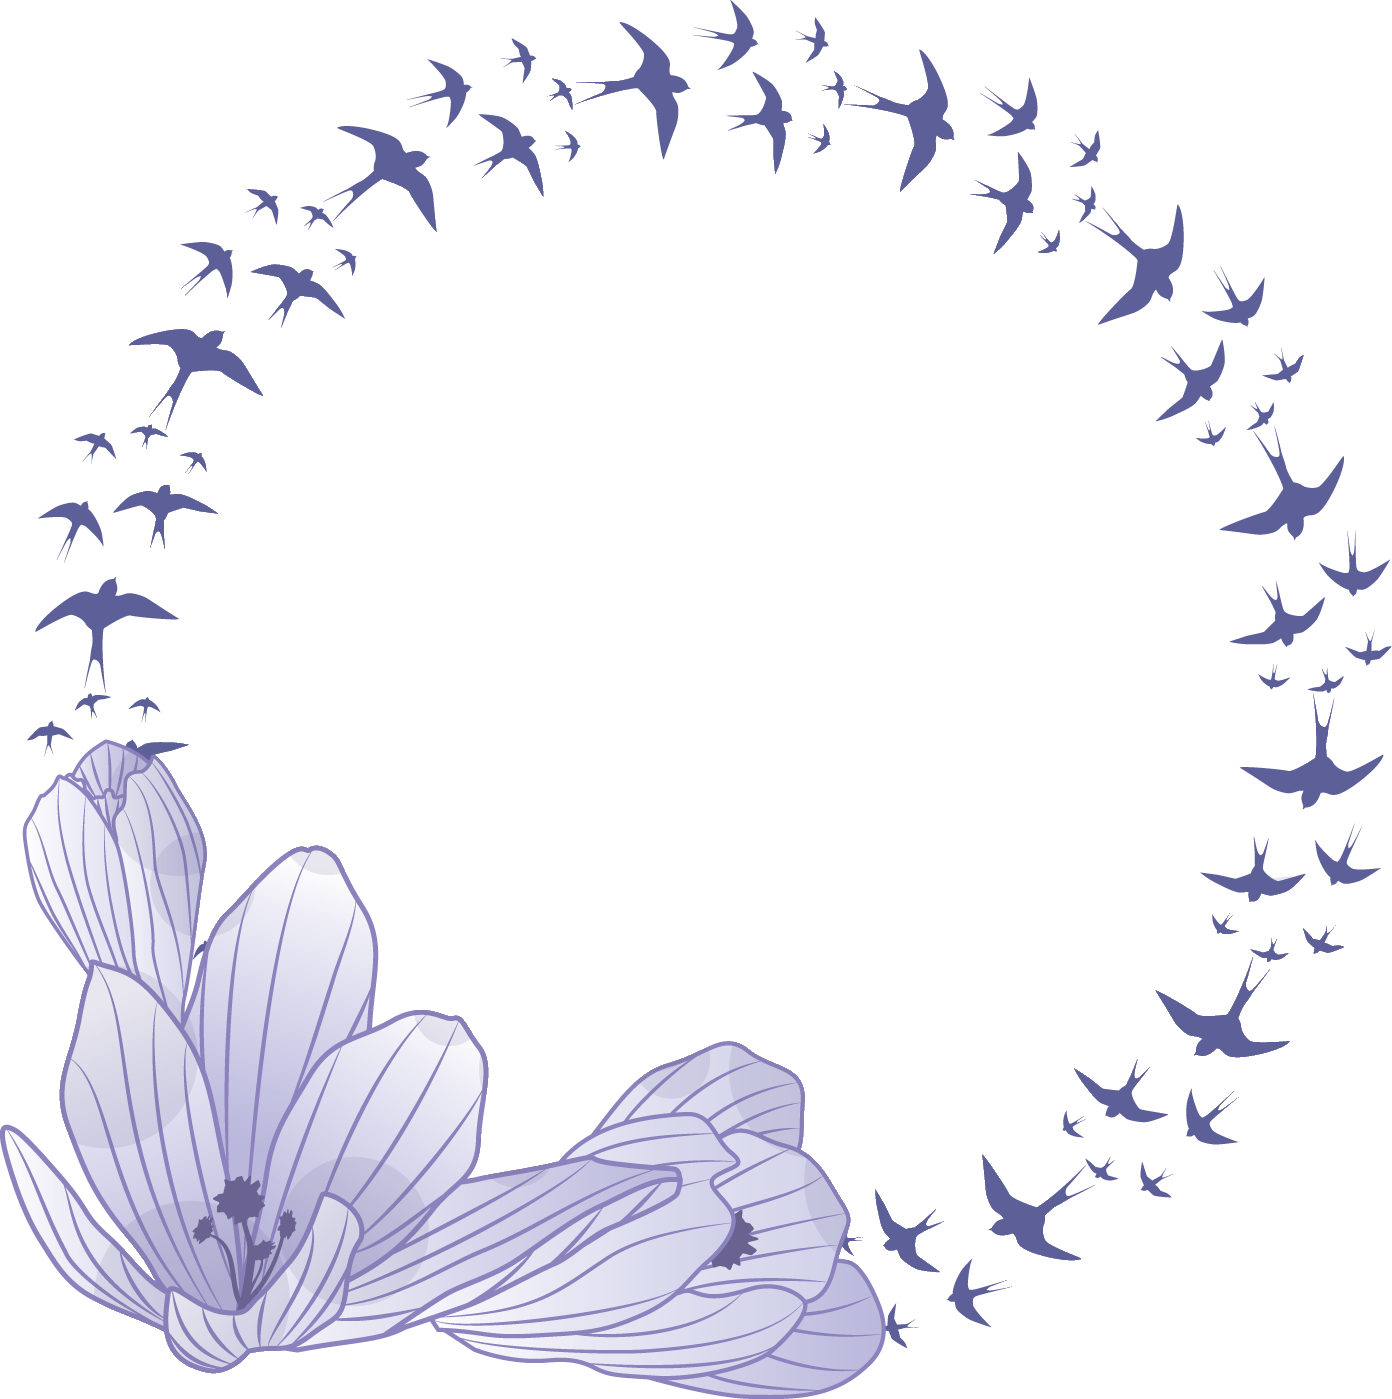 百合 ゆり の花の画像 イラスト フリー素材 No 144 水色 縦しま 鳥